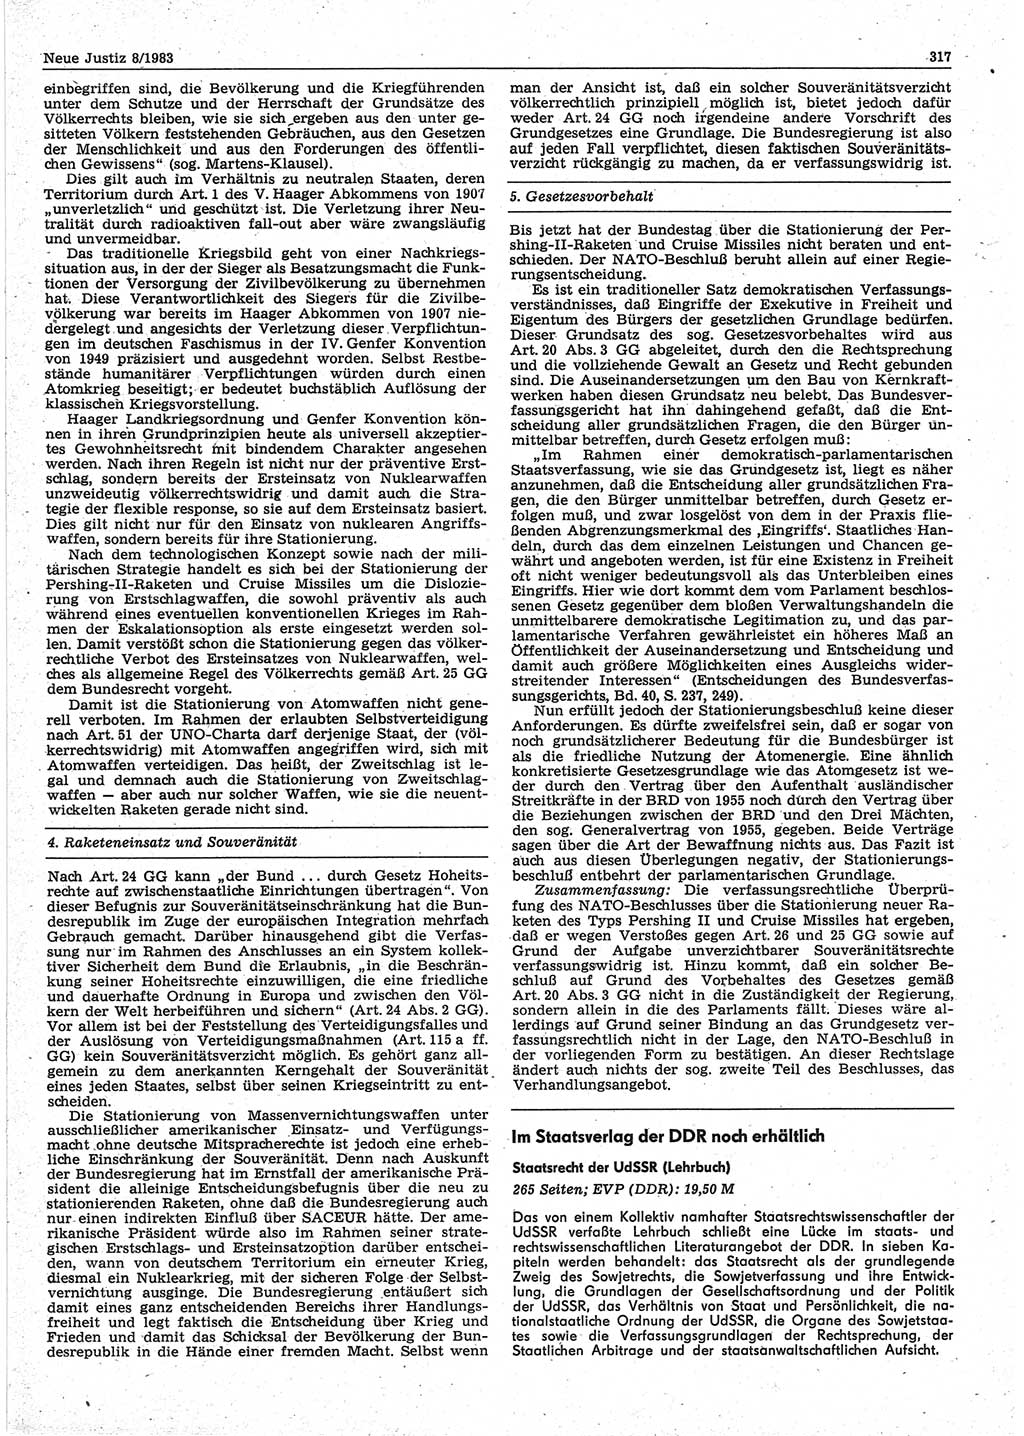 Neue Justiz (NJ), Zeitschrift für sozialistisches Recht und Gesetzlichkeit [Deutsche Demokratische Republik (DDR)], 37. Jahrgang 1983, Seite 317 (NJ DDR 1983, S. 317)